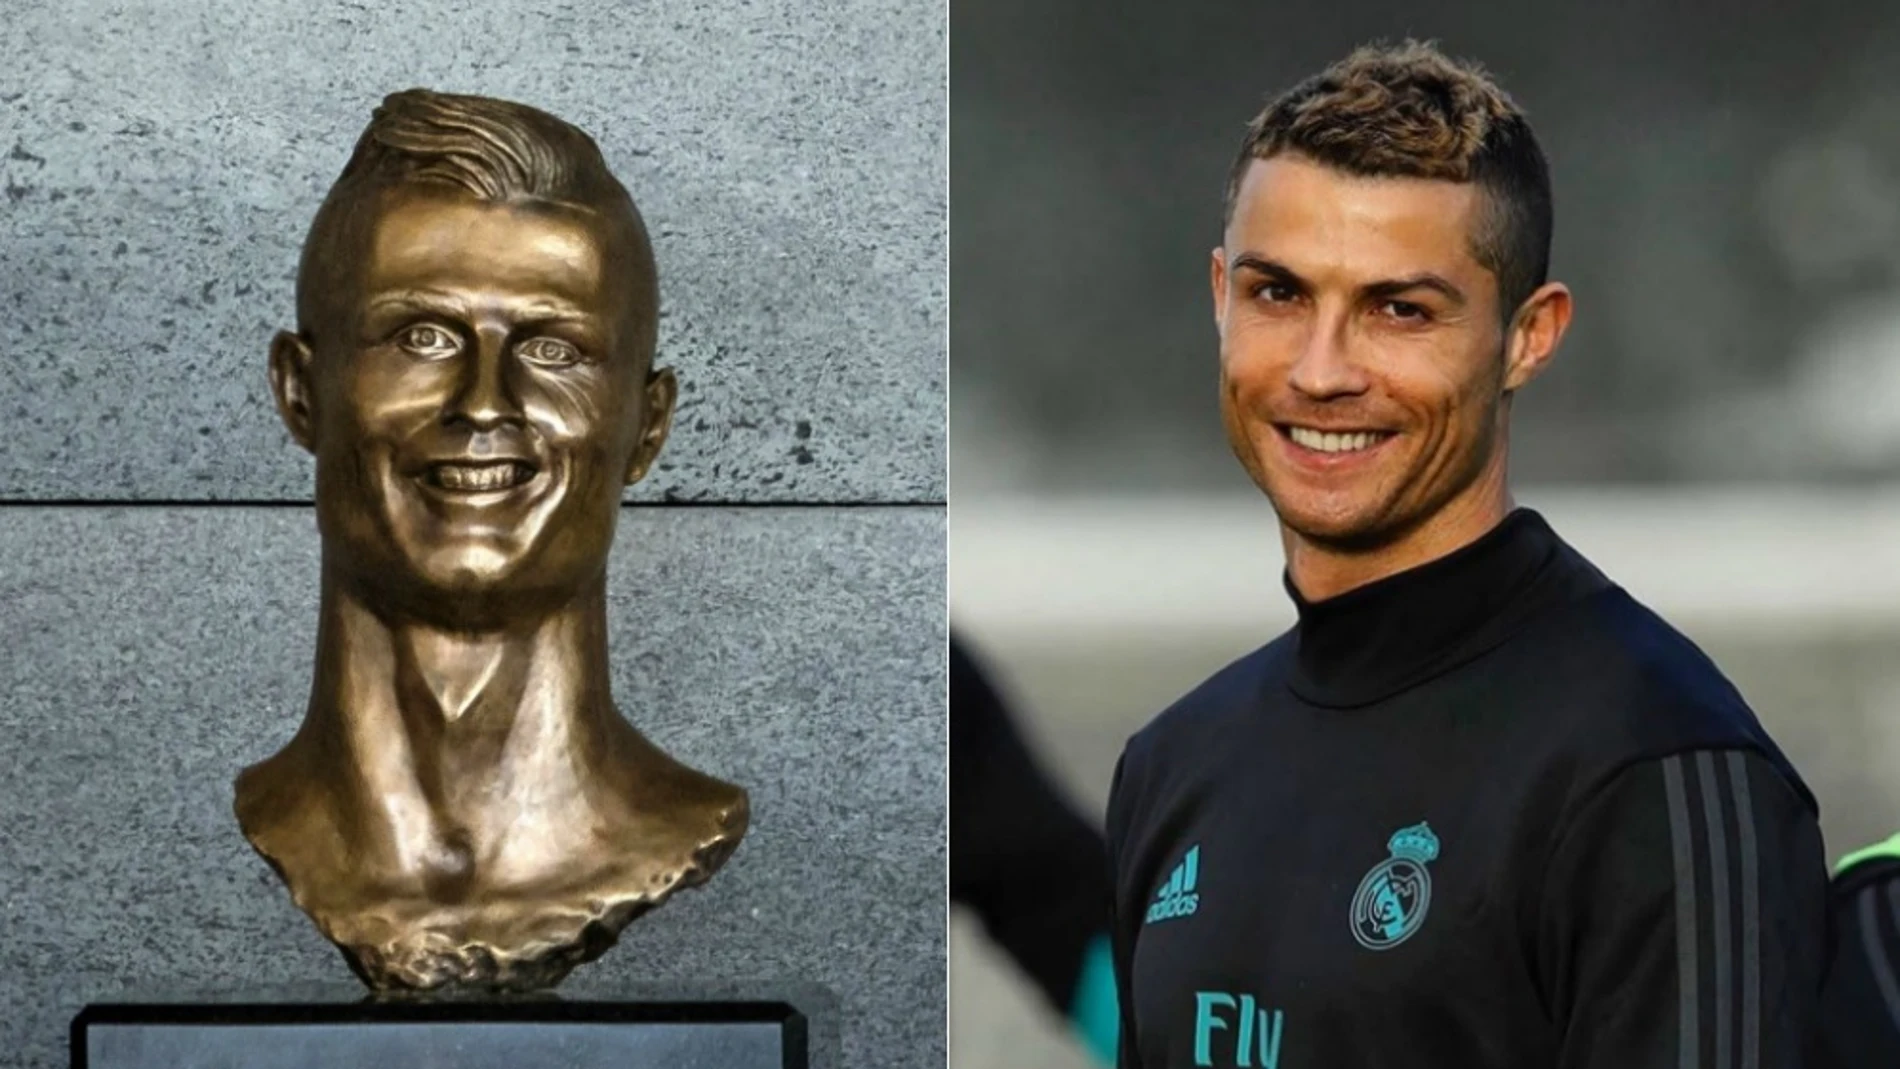 El viejo busto de Cristiano Ronaldo que desató las mofas en la red